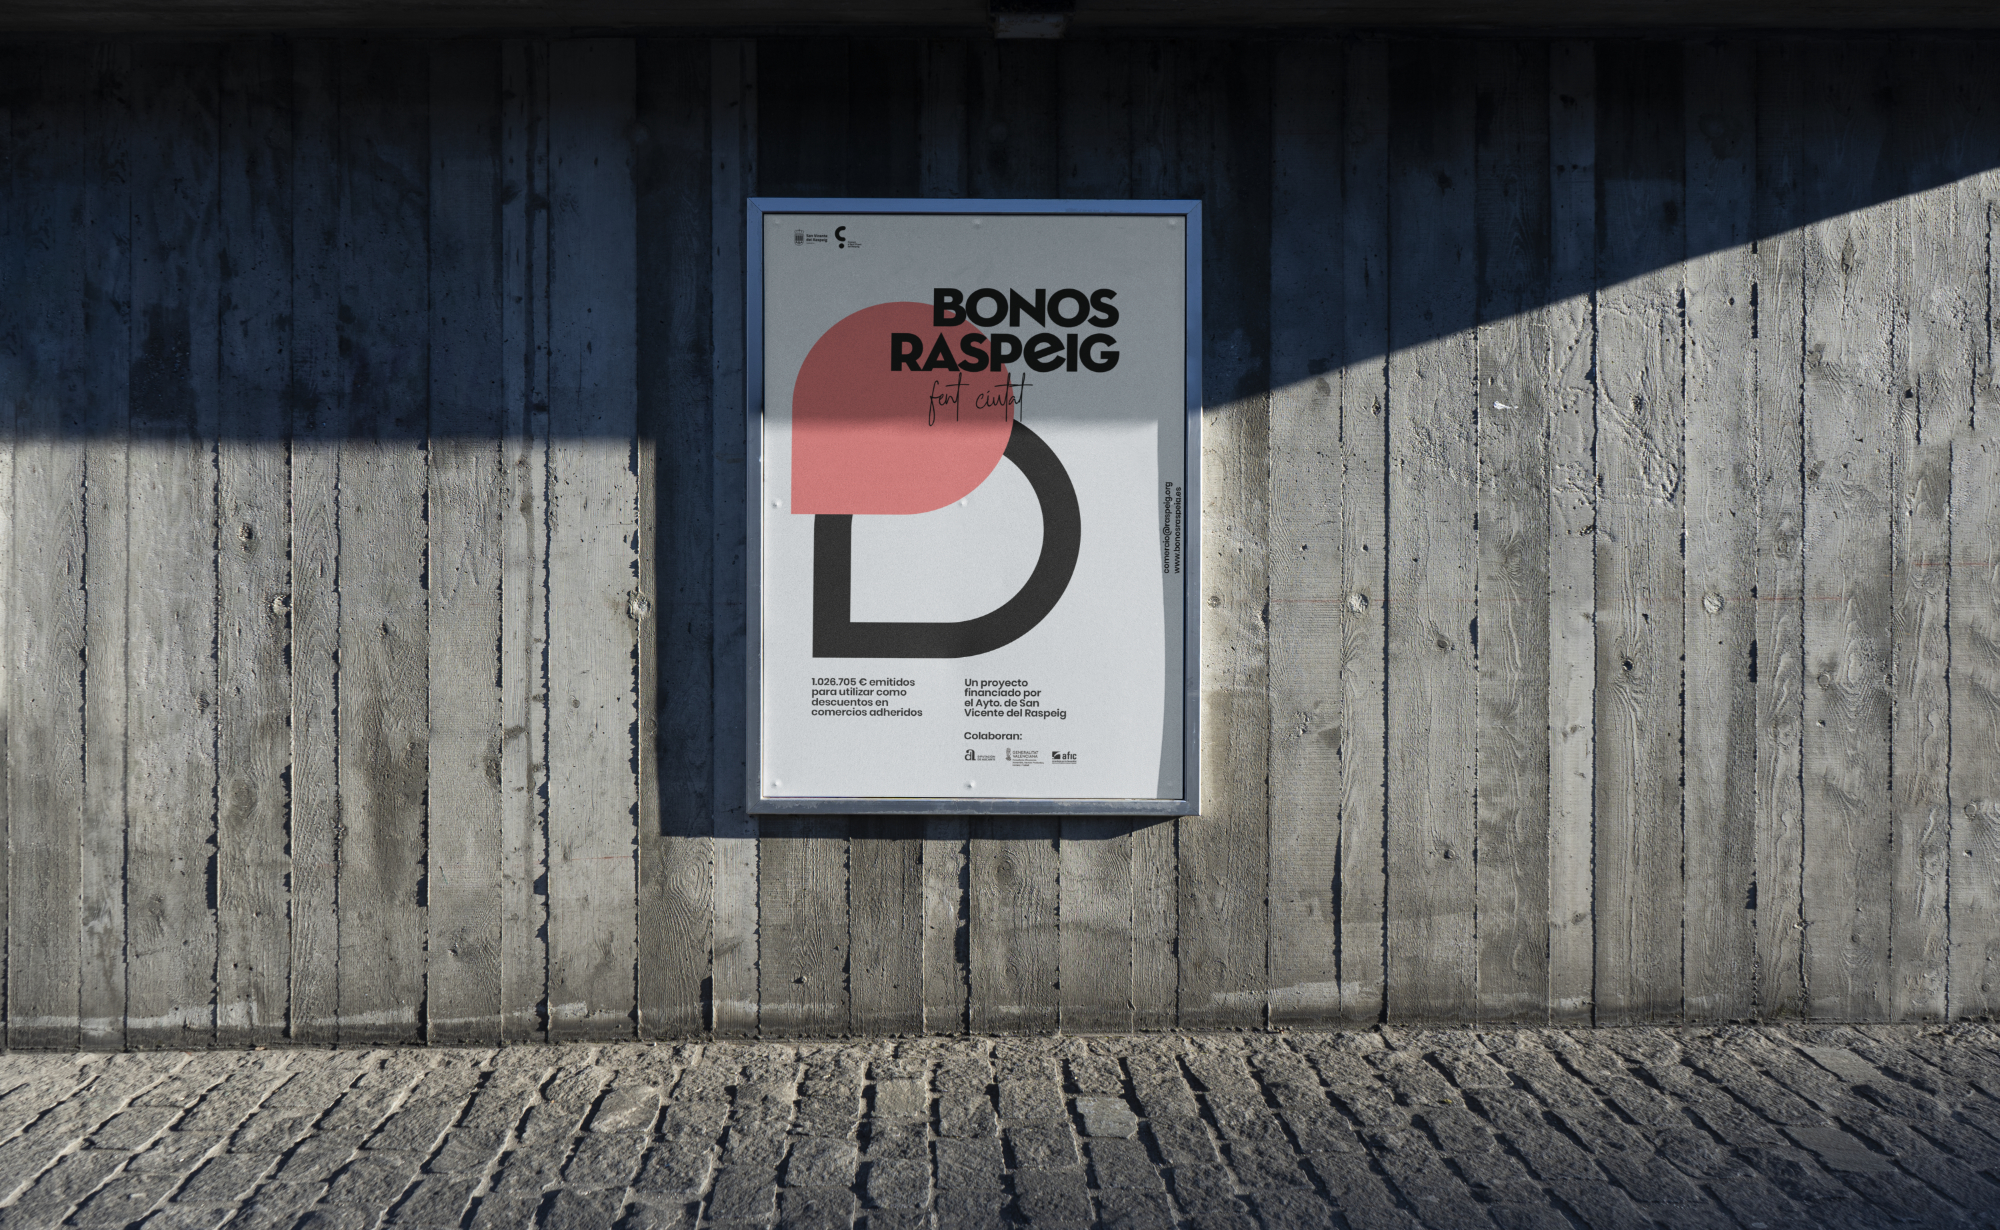 Diseño de cartelería para la campaña Bonos Raspeig 2021.